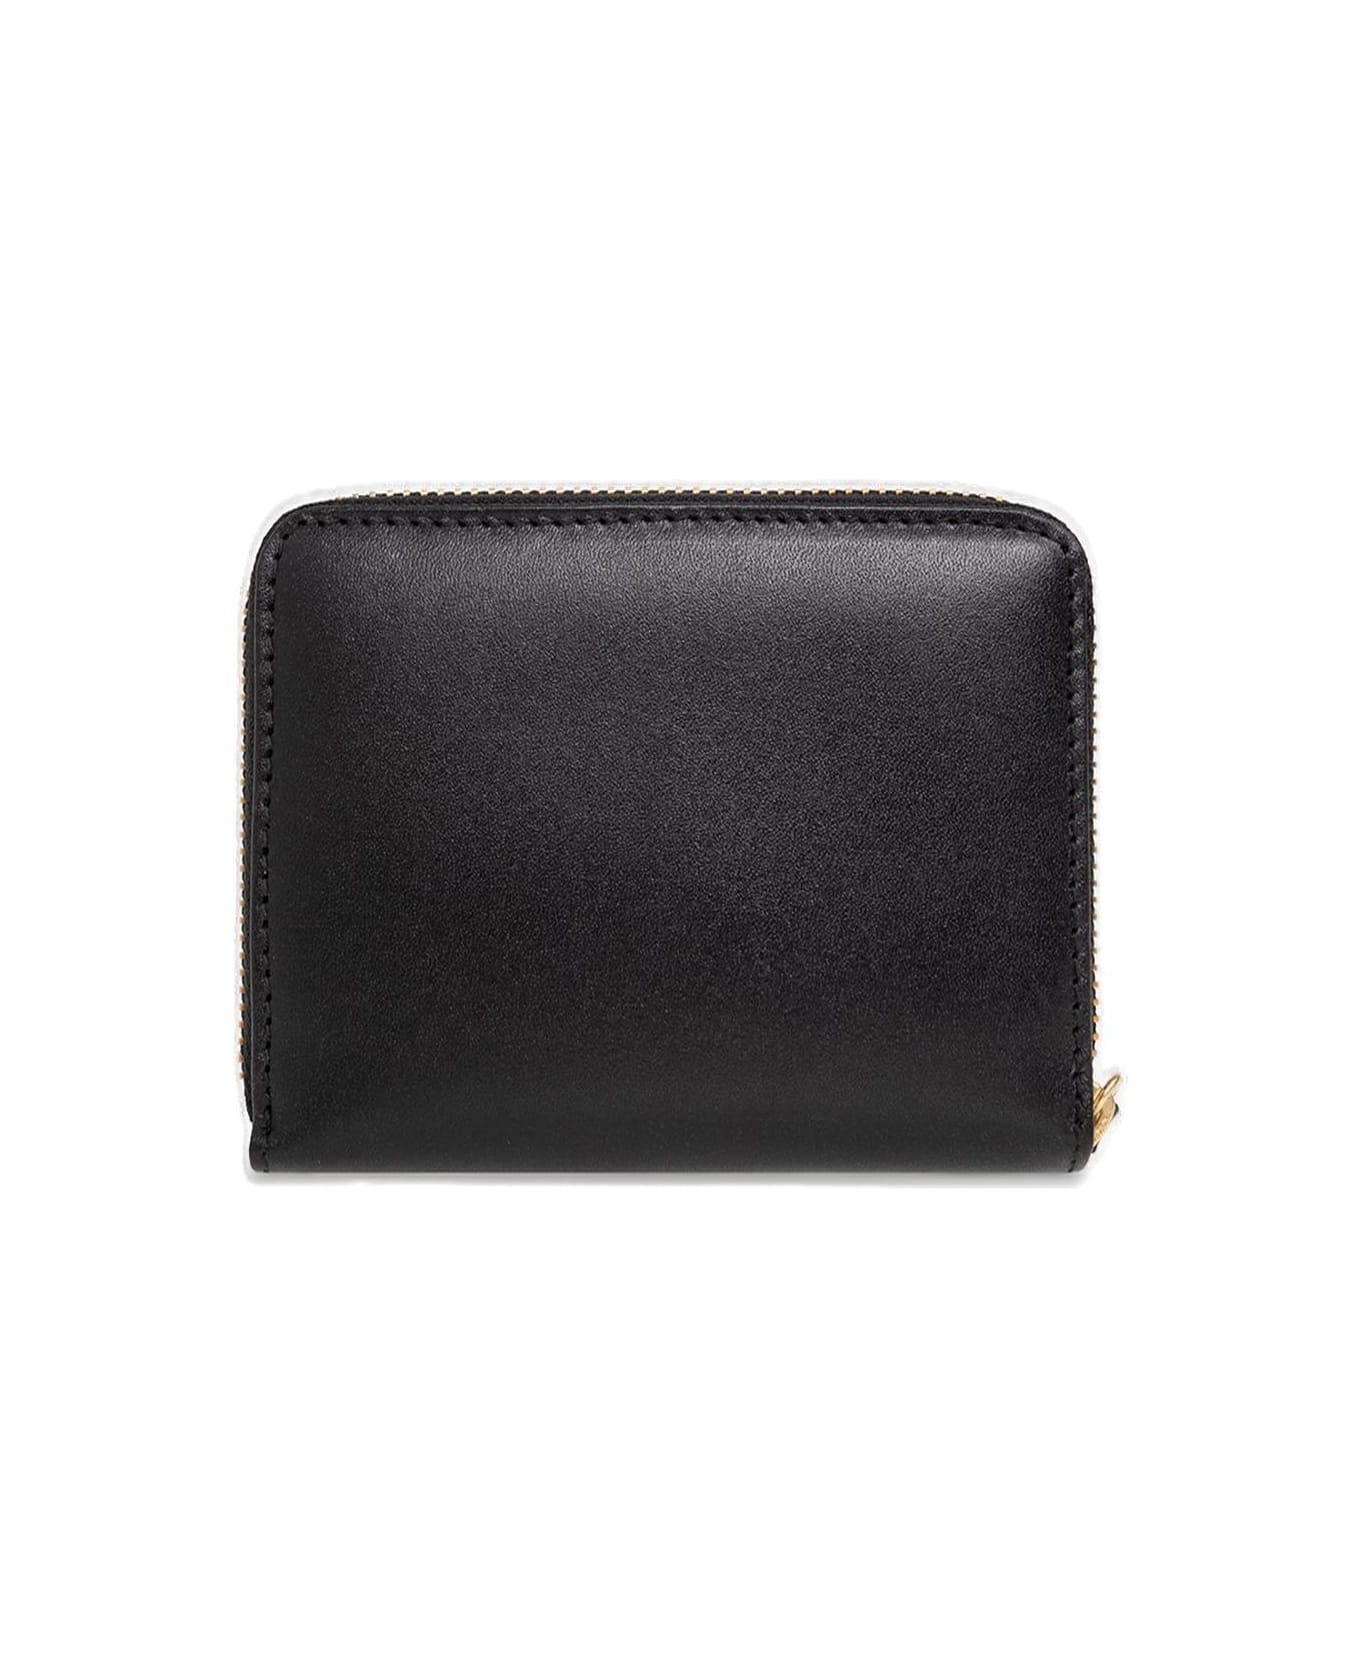 Comme des Garçons Wallet Classic Zipped Wallet - Black 財布